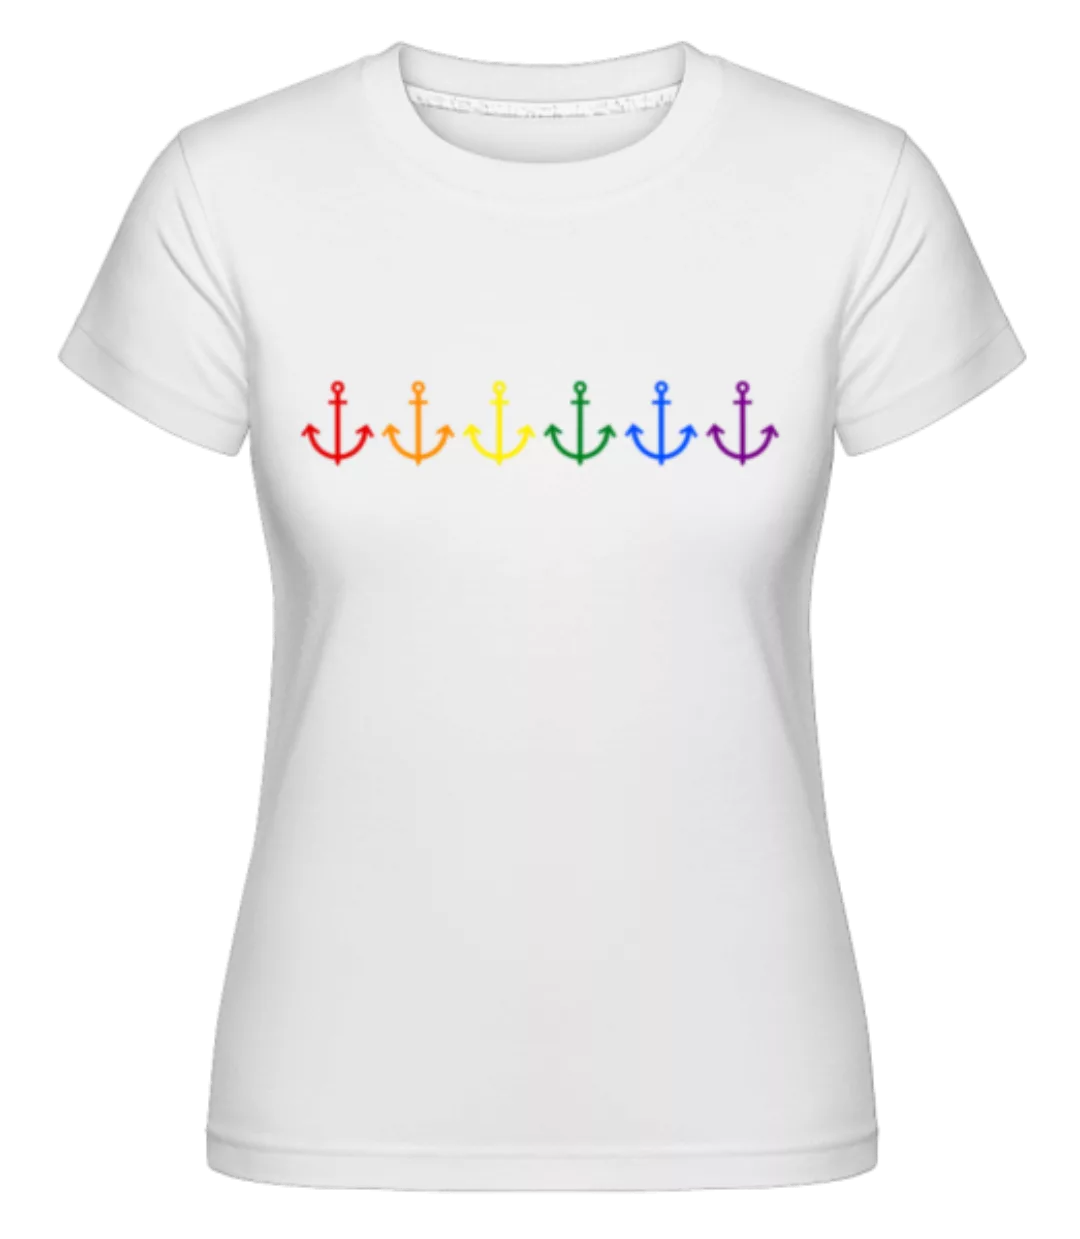 LGBTQ Anker · Shirtinator Frauen T-Shirt günstig online kaufen